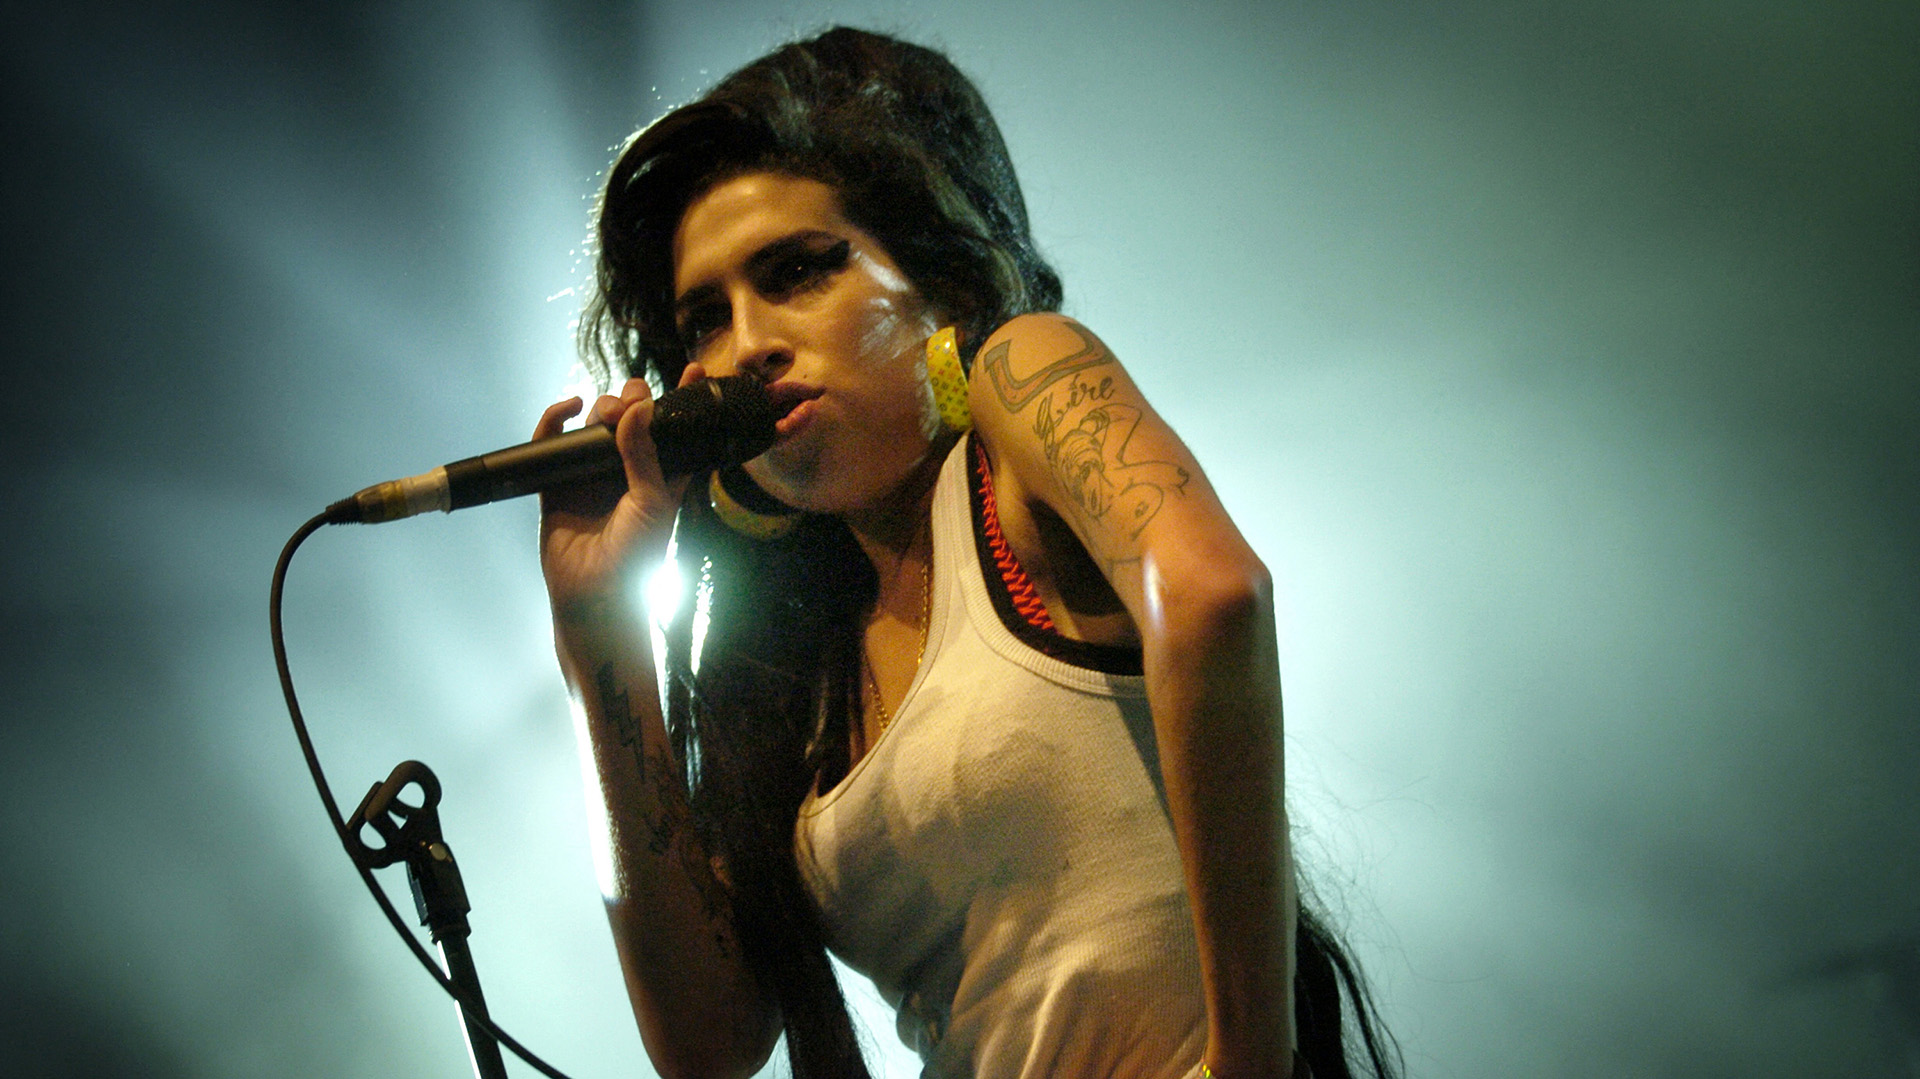 La artista británica Amy Winehouse falleció a los 27 años a causa de una intoxicación alcohólica en 2011. (Jeff Pachoud/AFP)